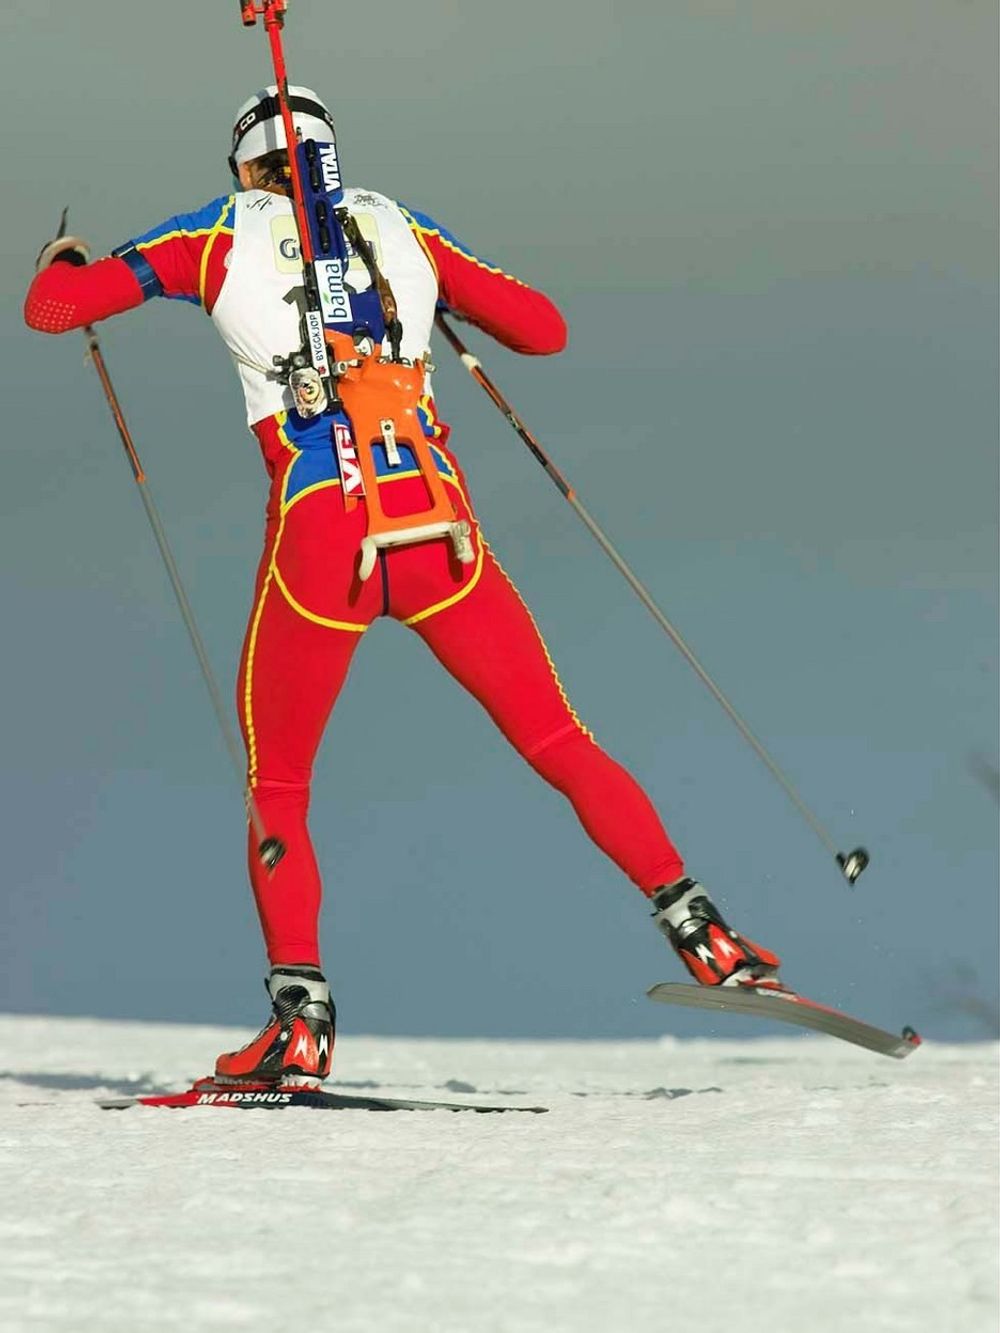 Madshus' spesialski skal sørge for at dette er det eneste konkurrentene får se av Ole Einar Bjørndalen.